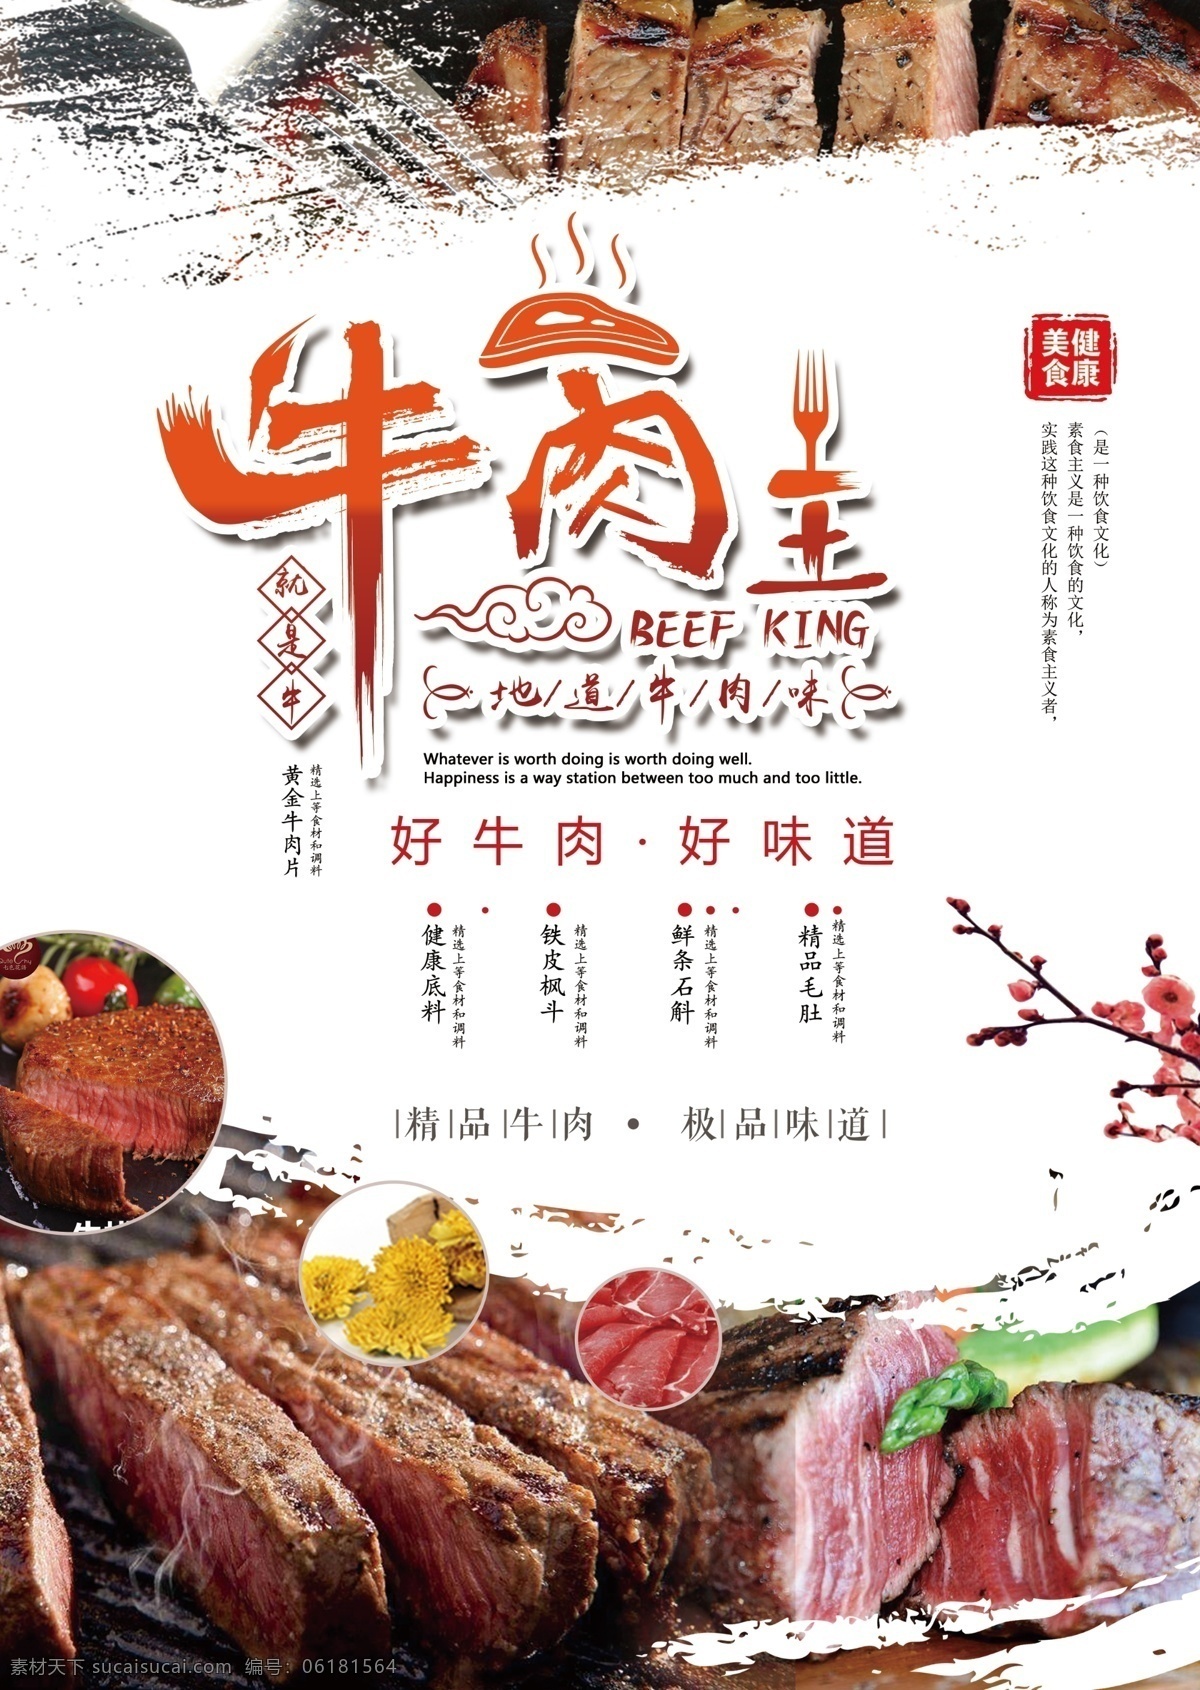 牛肉面 鑫王婆海报 墙面装饰画 餐馆菜品 美味面食 美食菜品